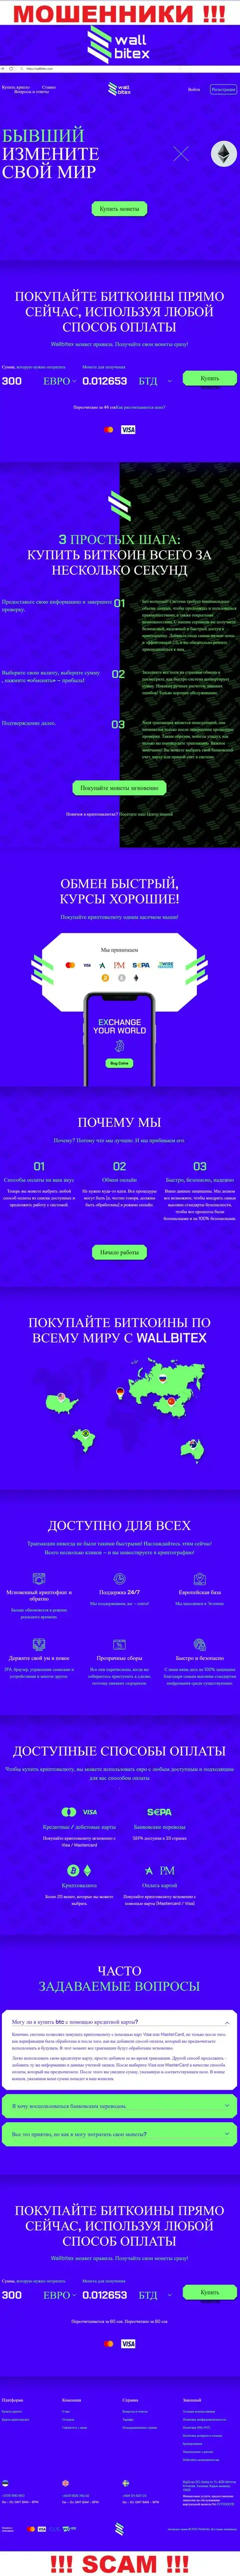 WallBitex Com - официальный интернет-сервис противозаконно действующей конторы WallBitex